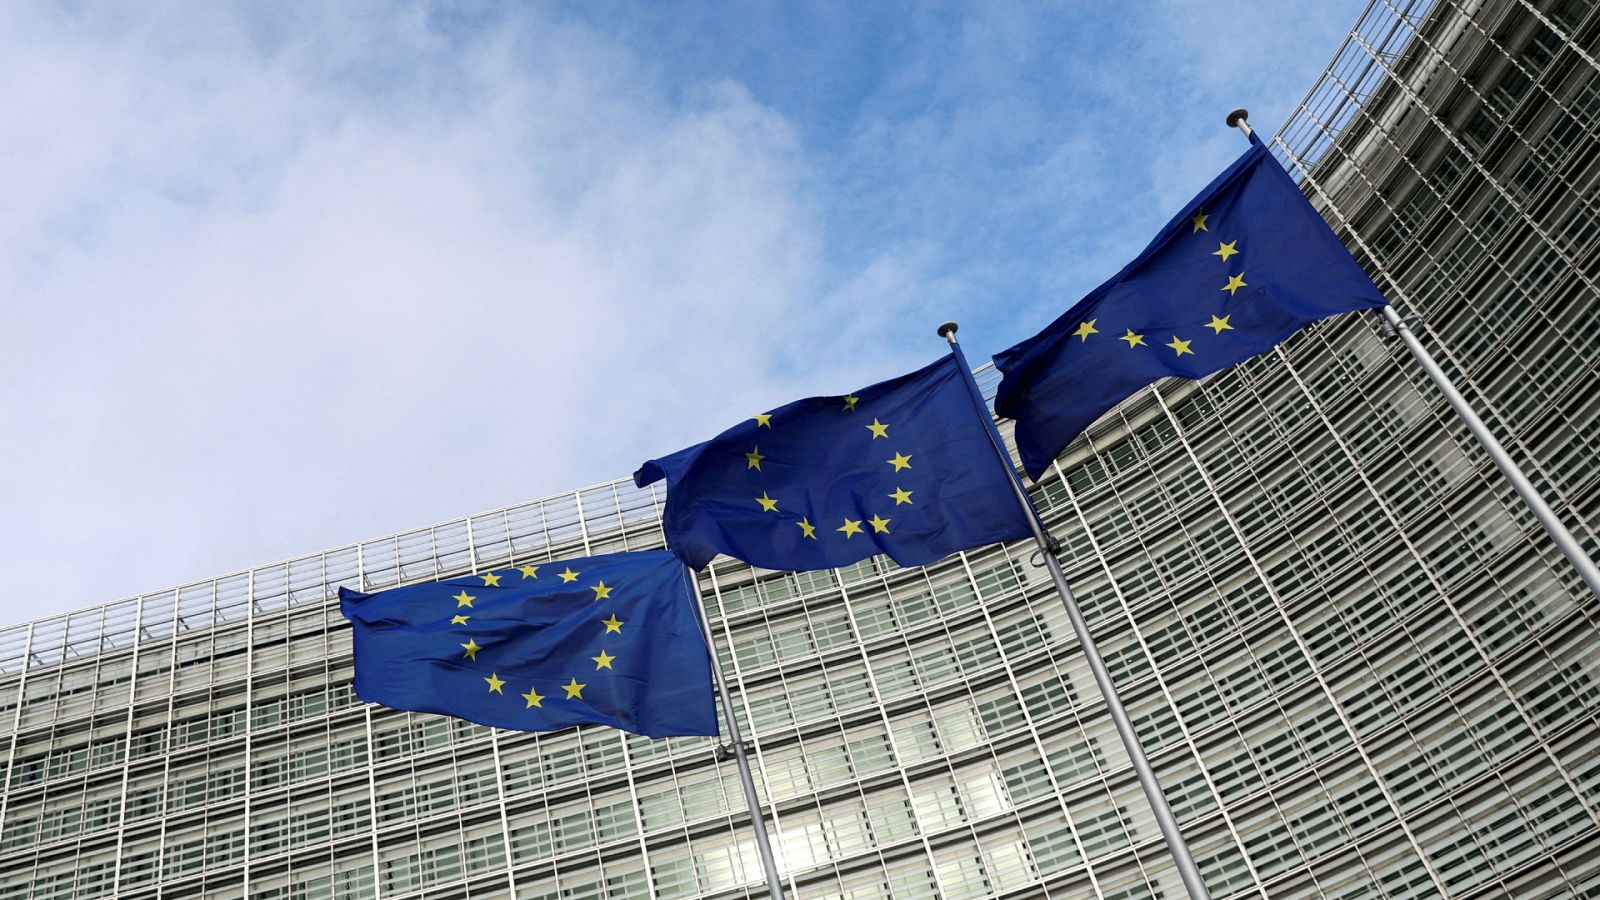 Banderas de la Unión Europea ondean frente a la Comisión Europea en Bruselas, Bélgica